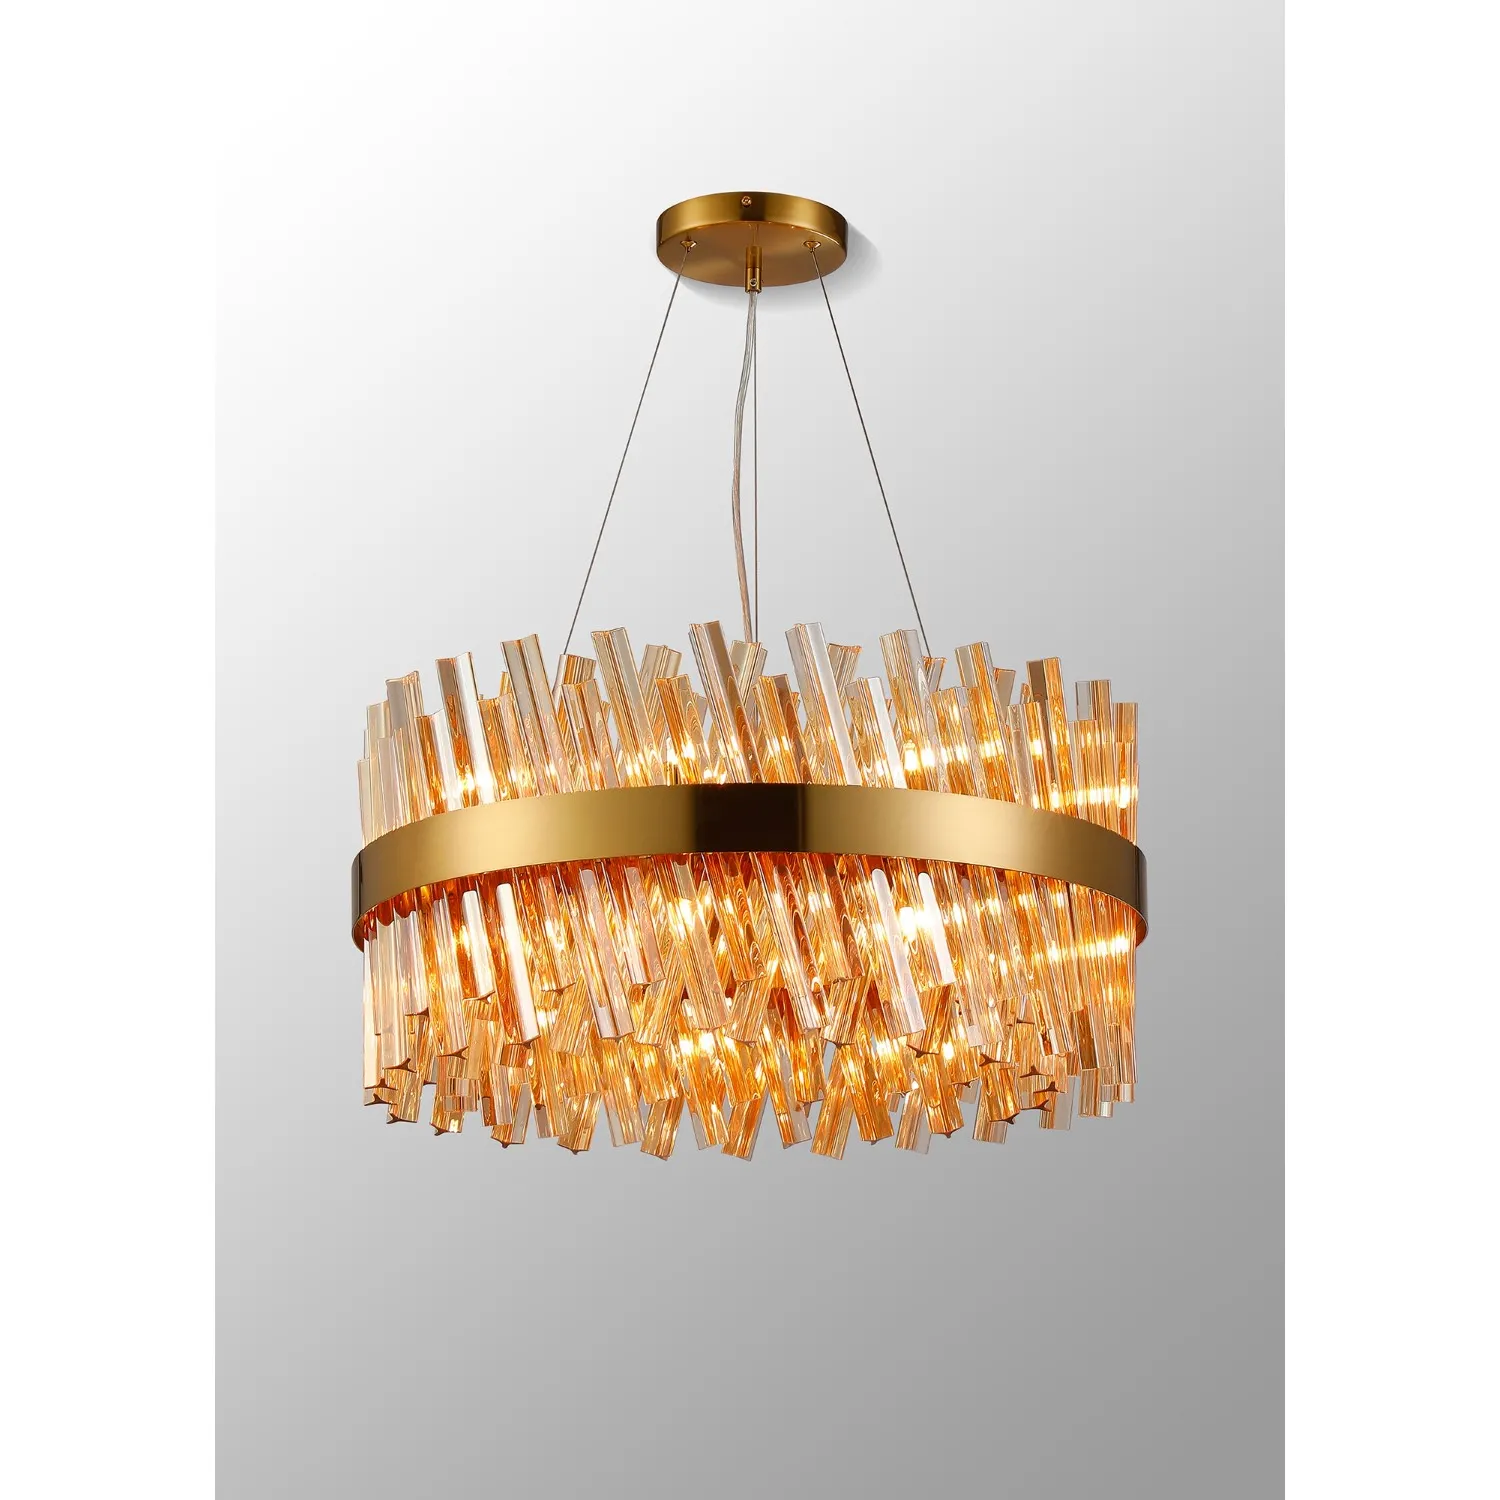 Brass Amber 60cm Round Pendant Light 18 G9 Lamp Holders